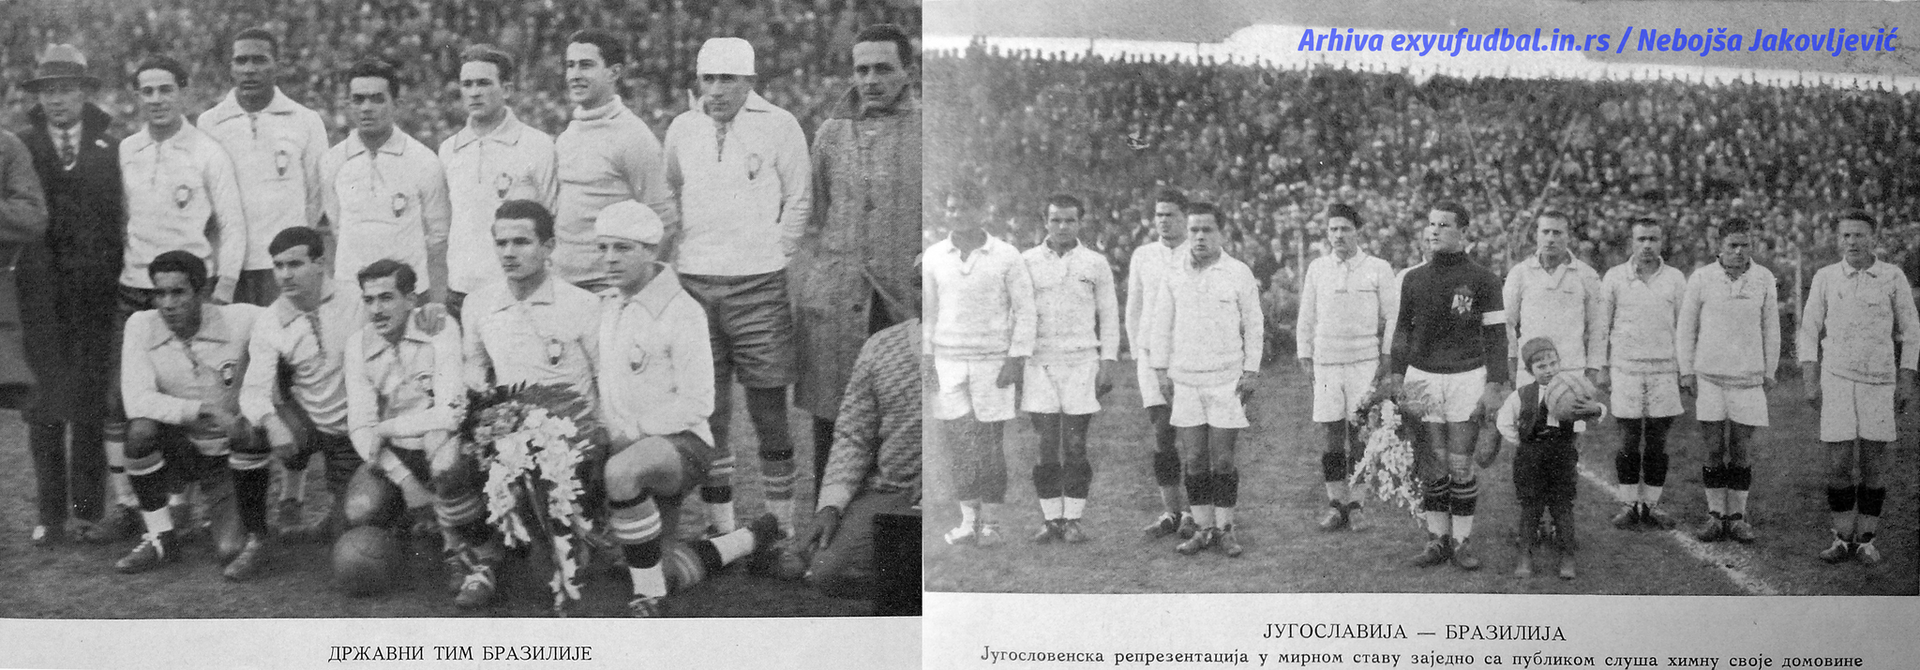 Jugoslavija i Brazil, Urugvaj 1930 - Sputnik Srbija, 1920, 24.11.2022